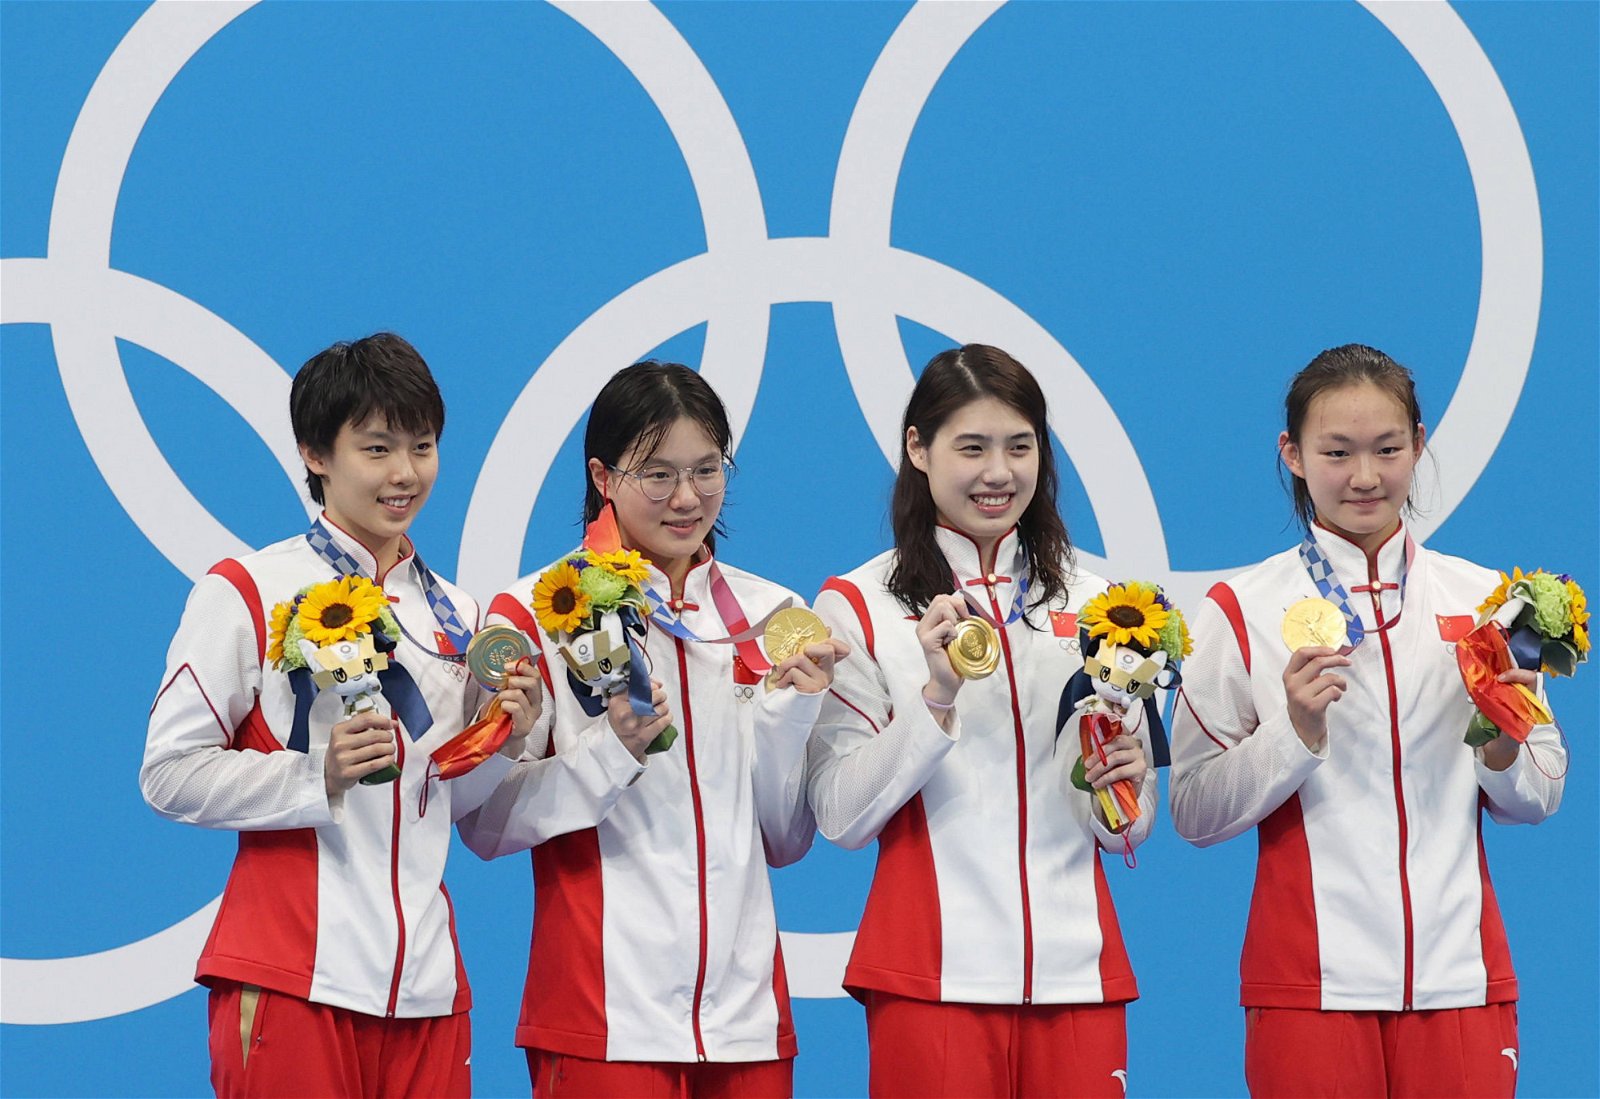 中国泳队选手杨浚瑄、汤慕涵、张雨霏、李冰洁（从左到右）在颁奖仪式上展示手上的金牌。（图取自网络）